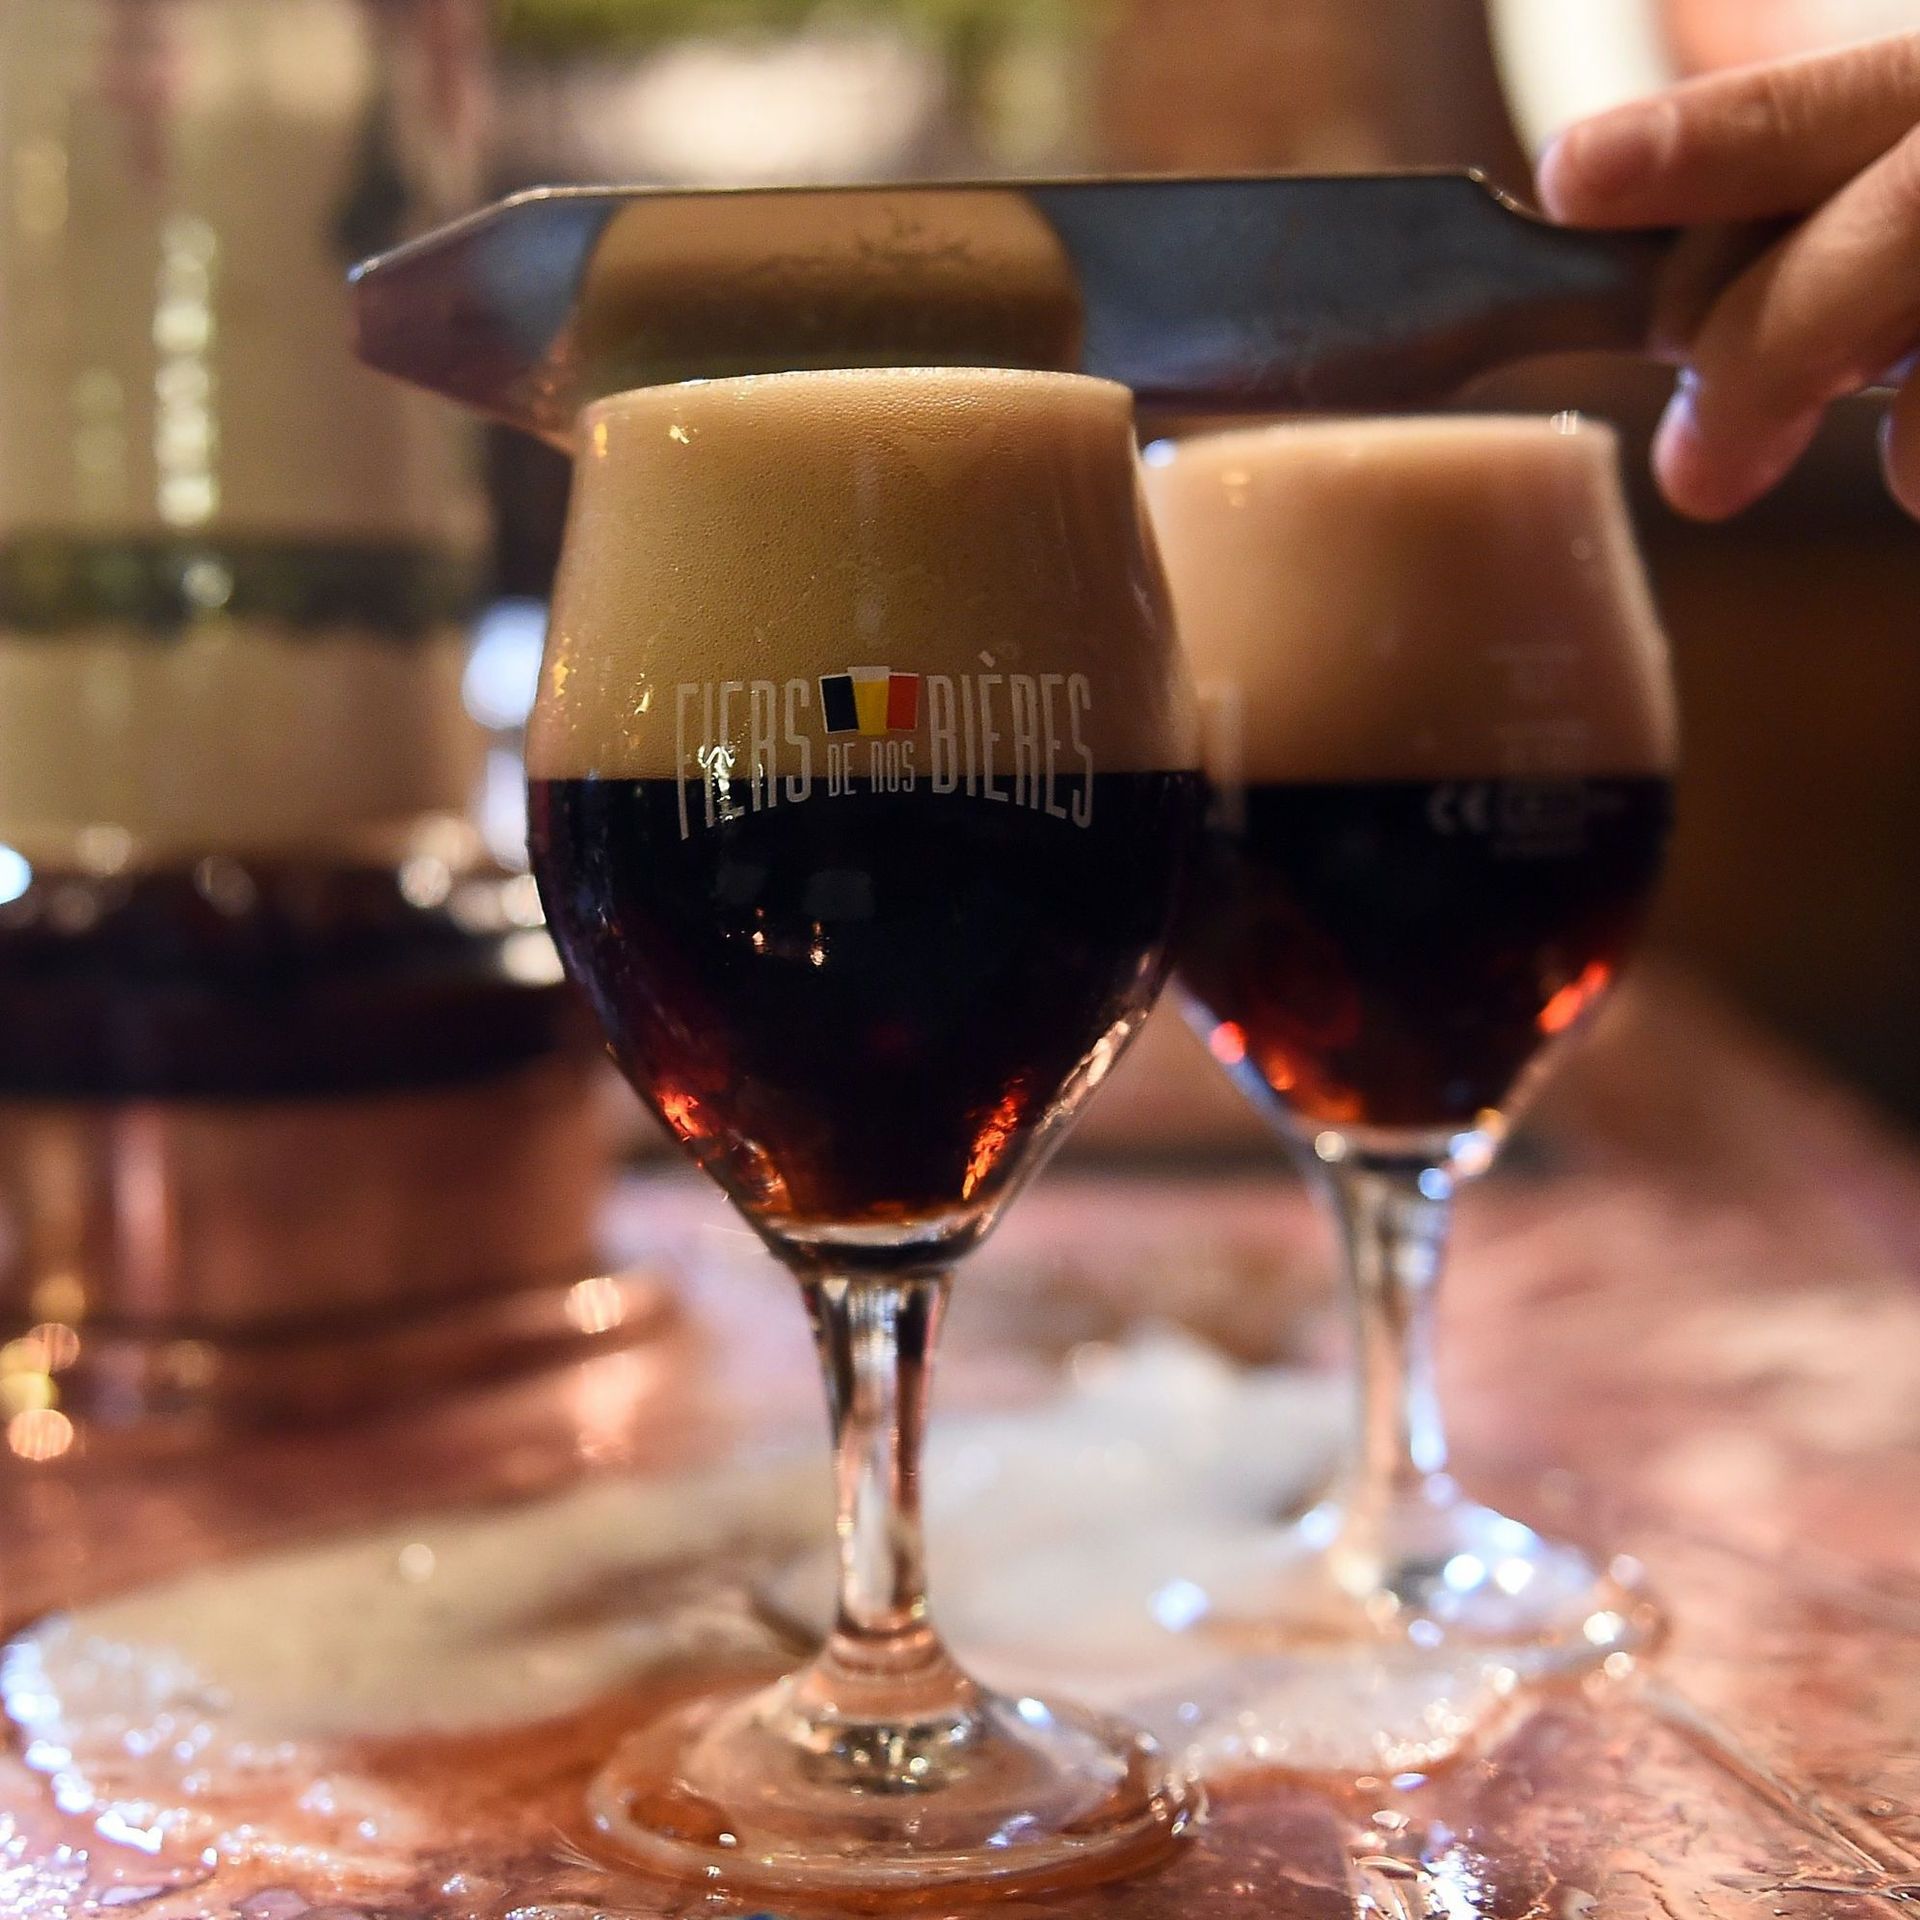 Est-ce que les bières belges sont vraiment les meilleures du monde ?